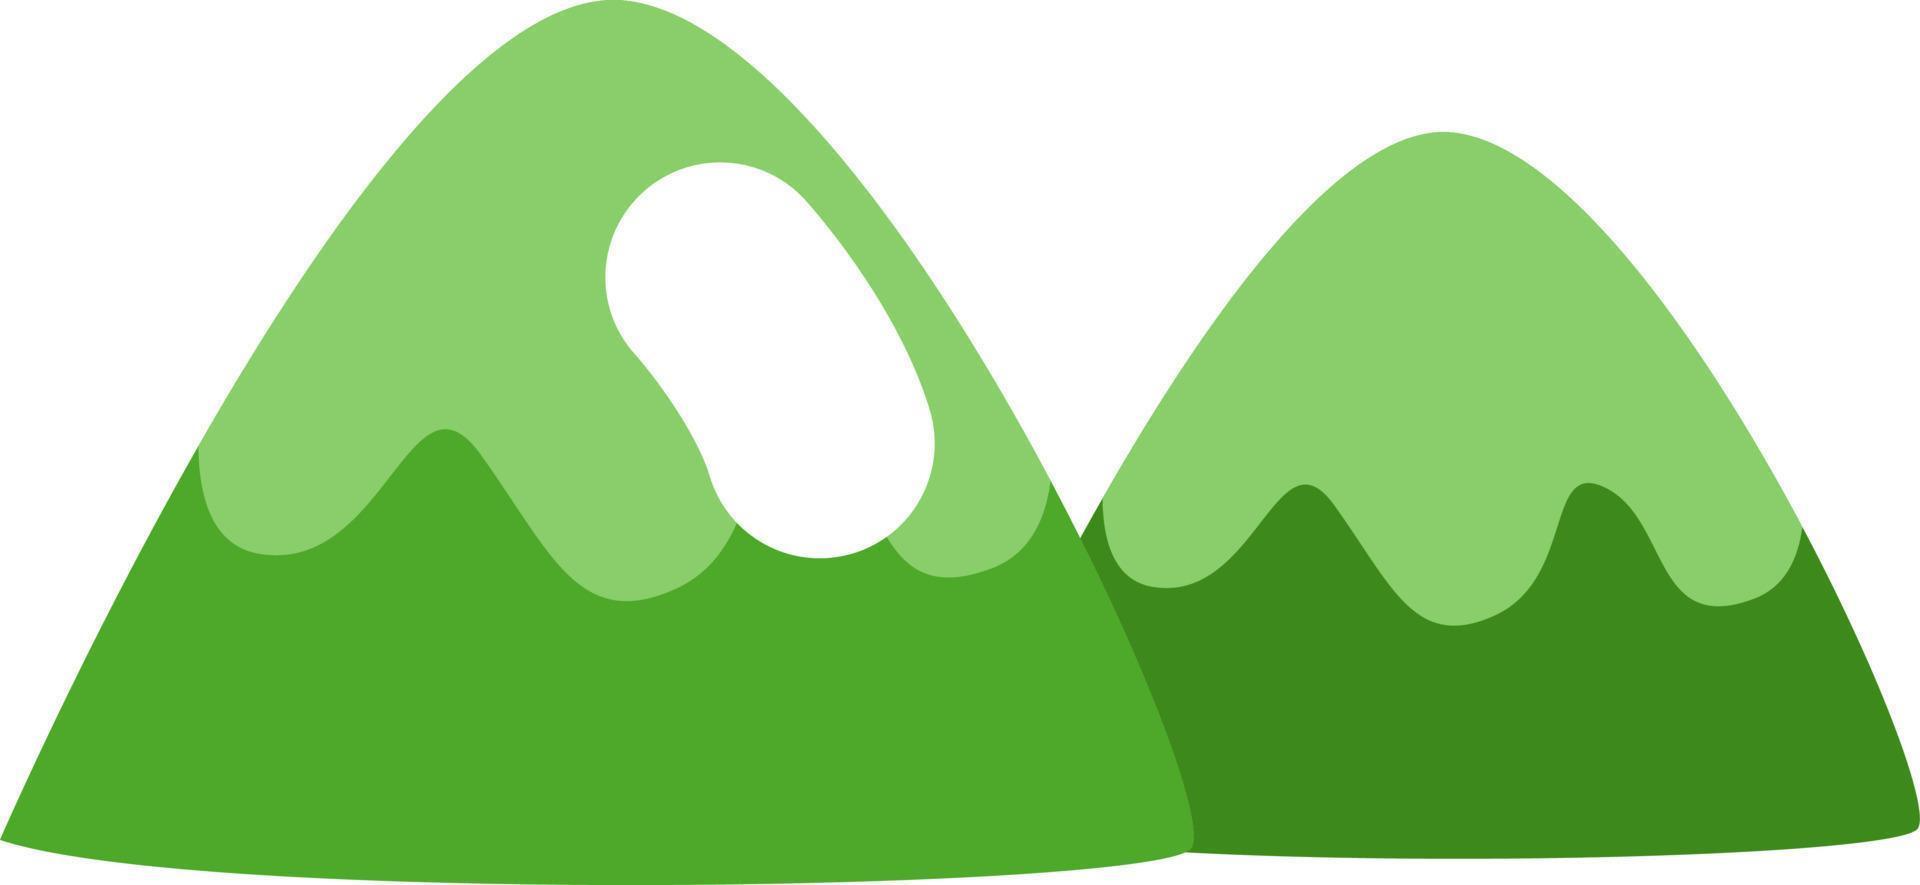 grüne Berge, Illustration, Vektor auf weißem Hintergrund.